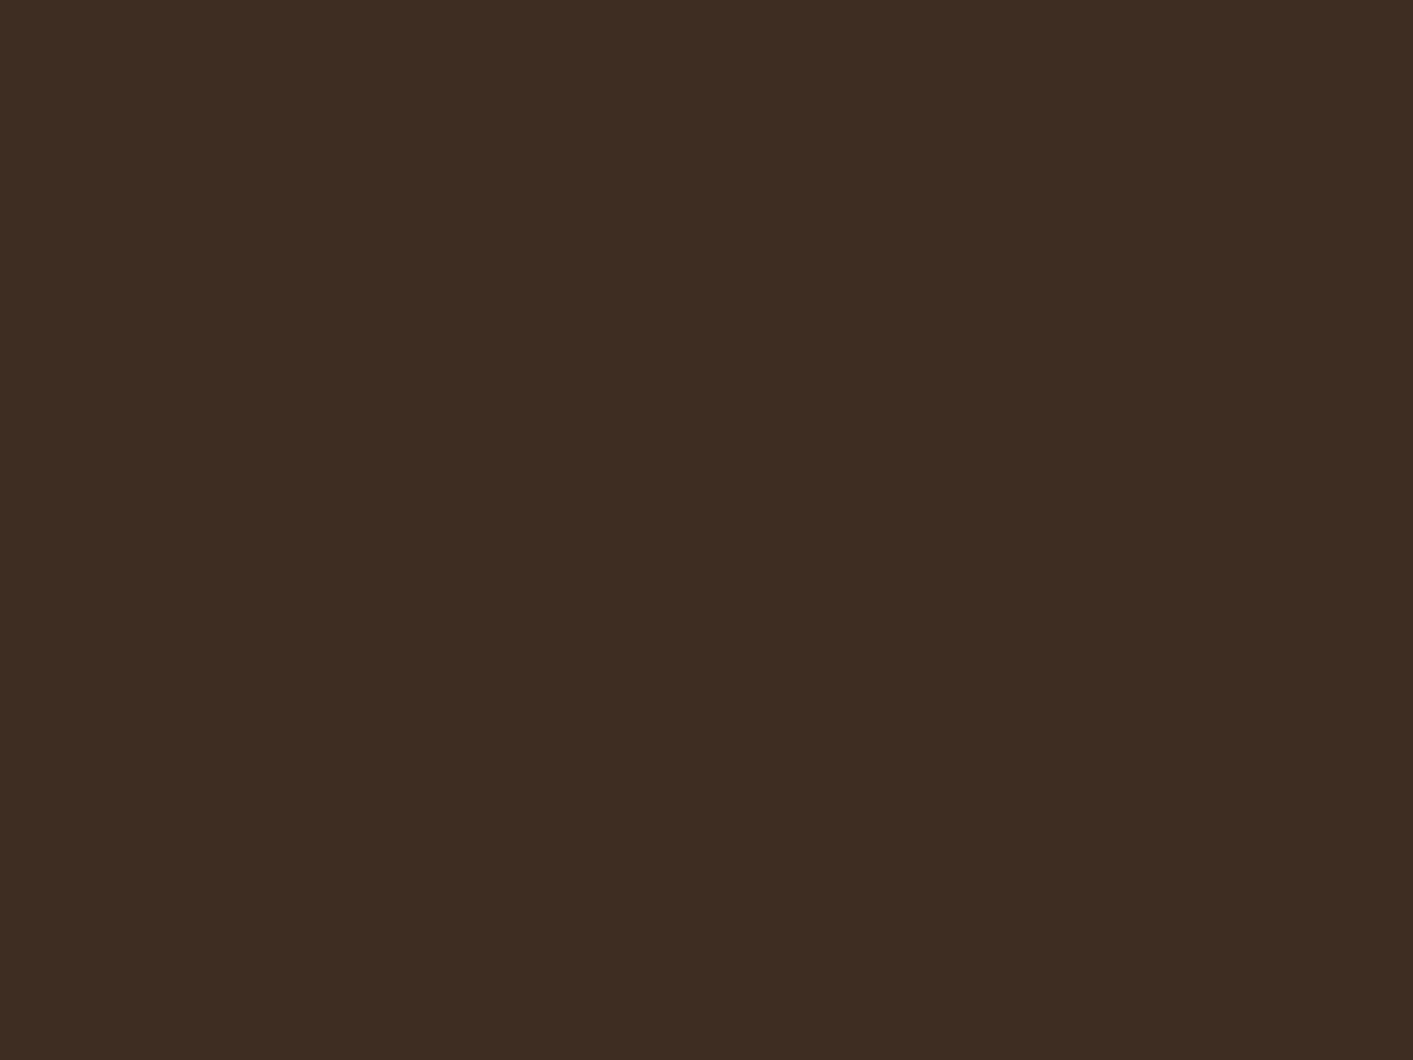 Алексей Кившенко. Военный совет в Филях в 1812 году (фрагмент). 1882. Государственная Третьяковская галерея, Москва